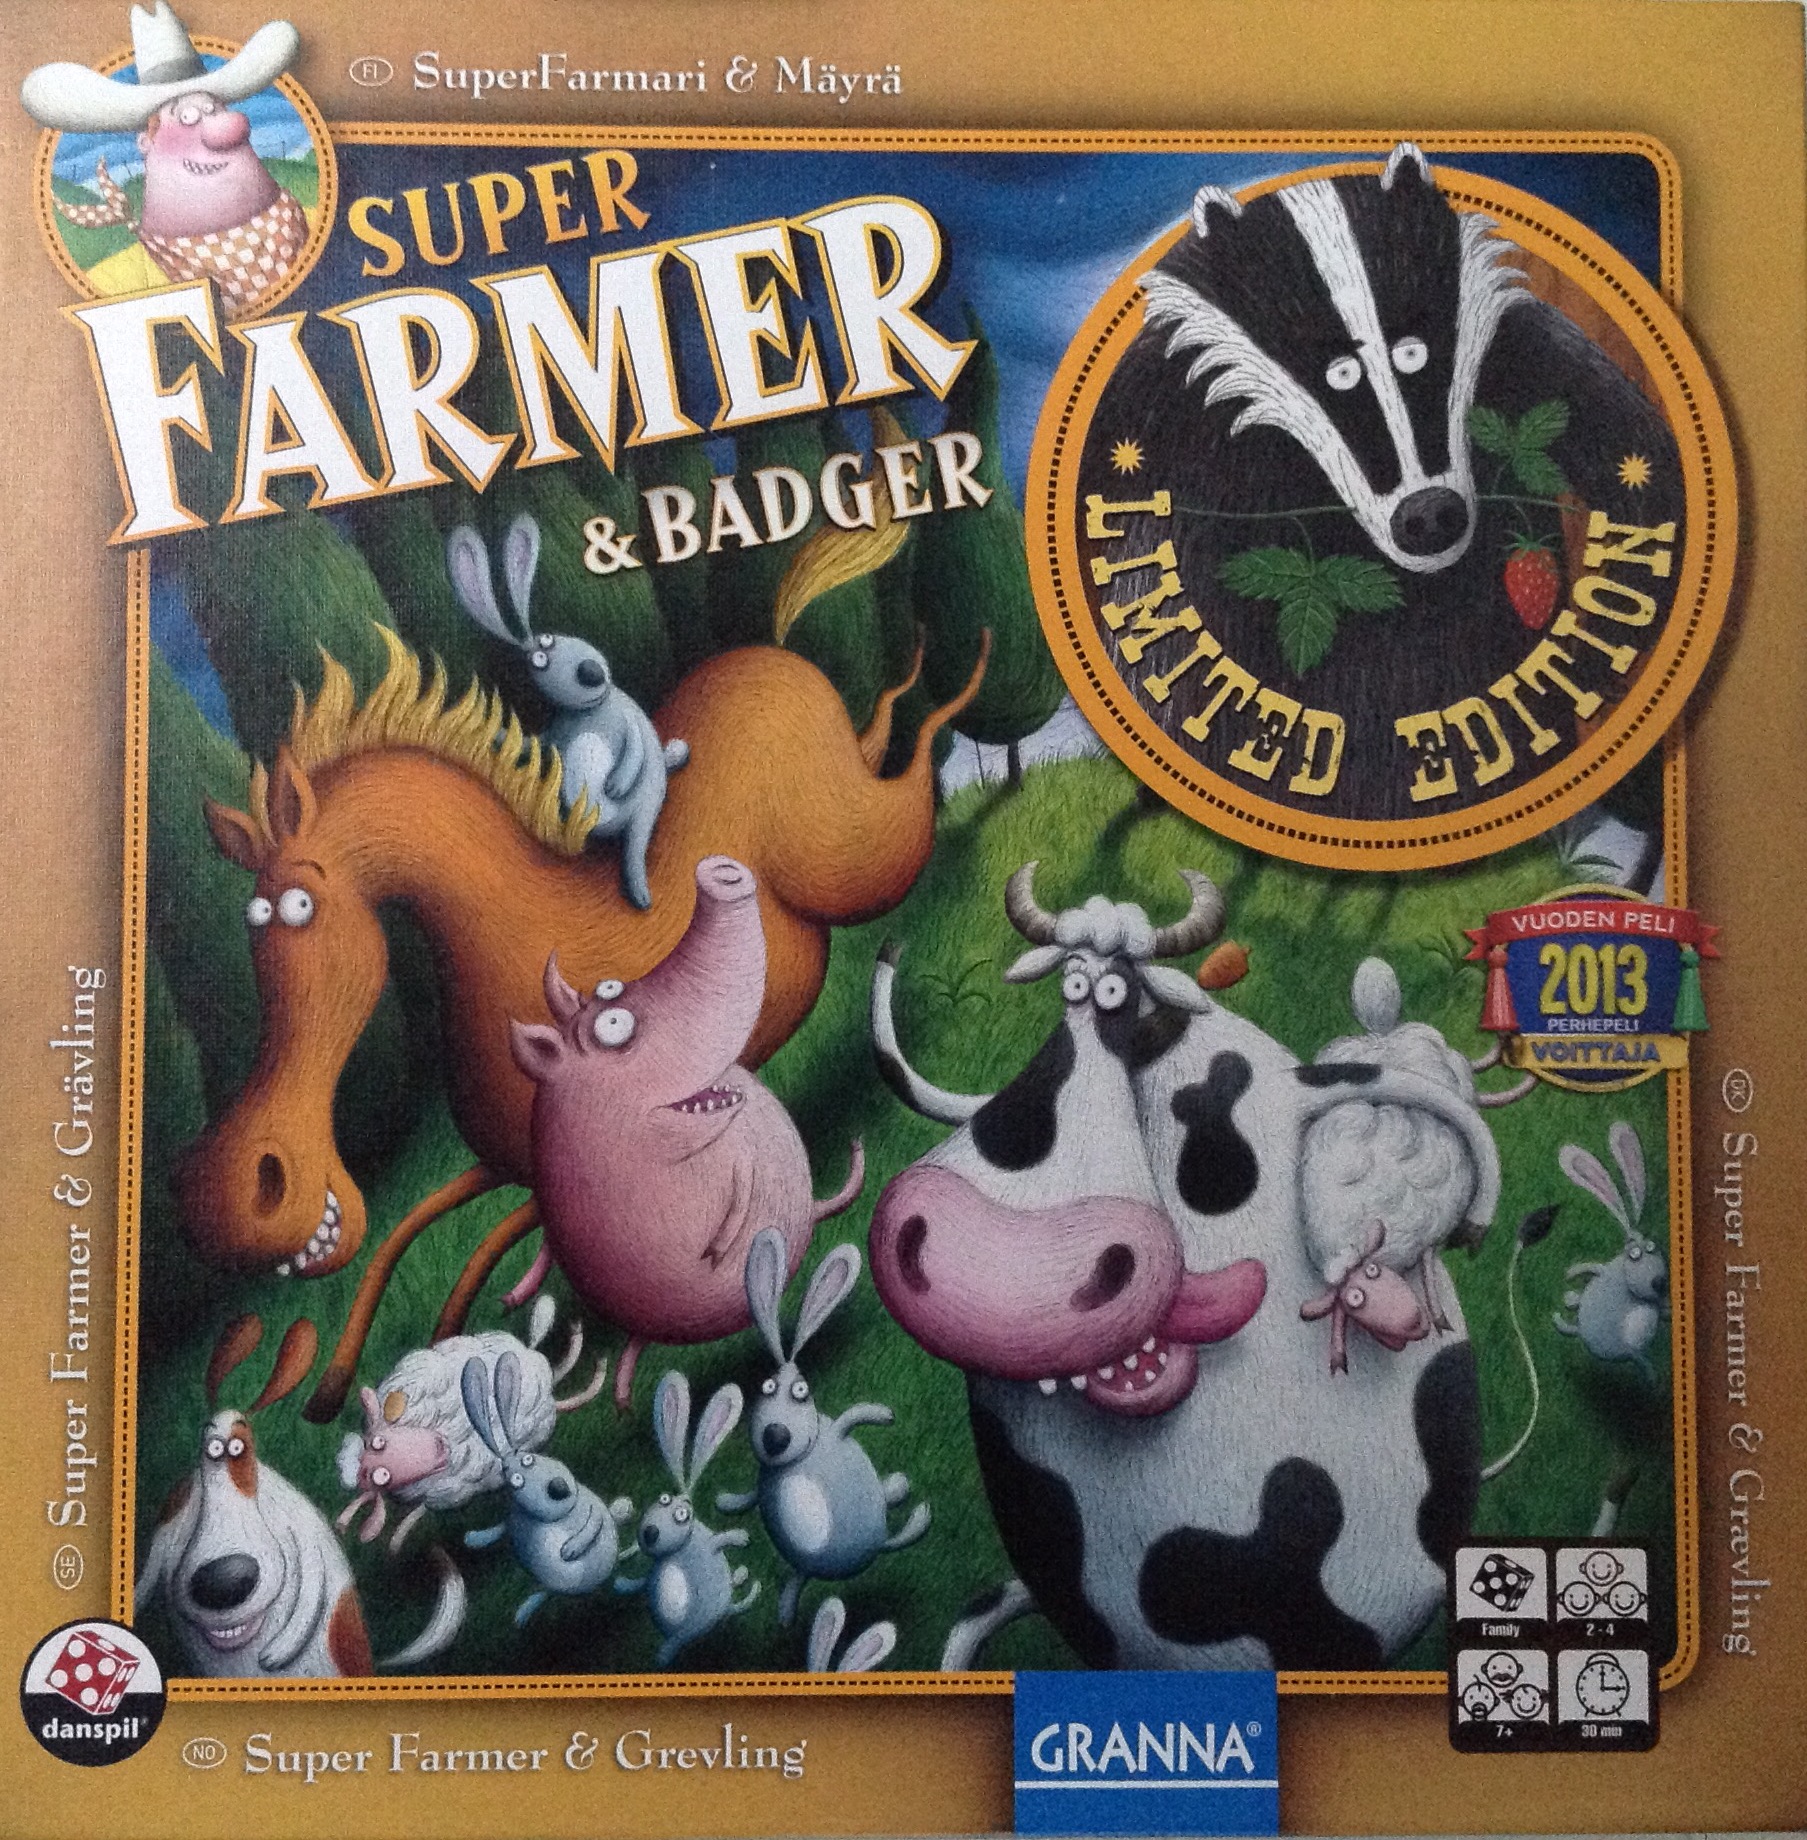 Super Farmer & Grævling